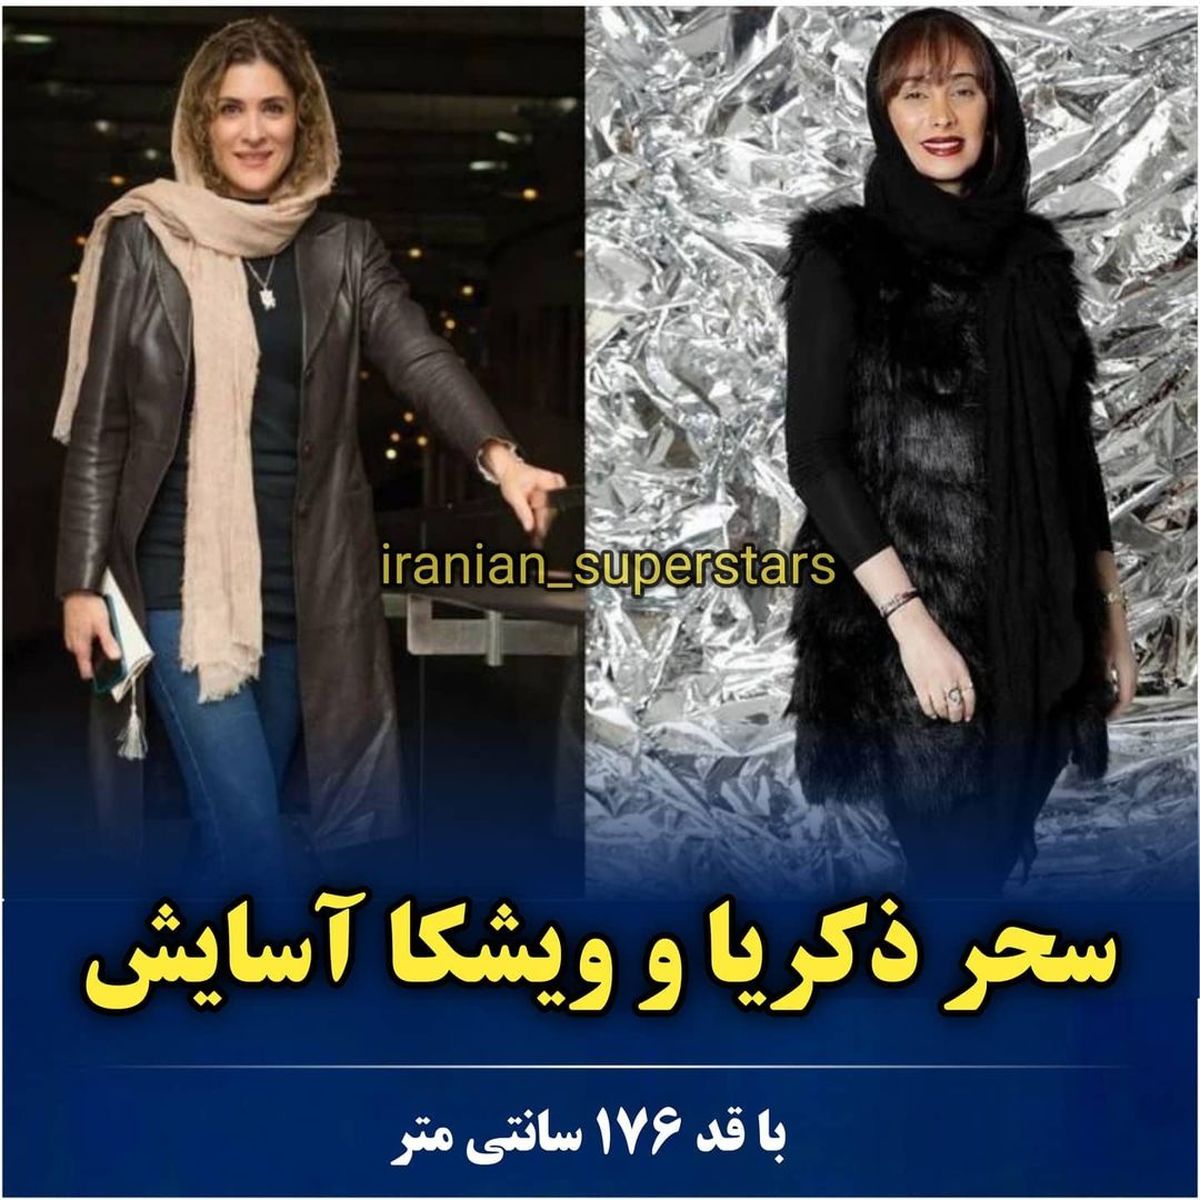 iranian_superstars_1626167754_9